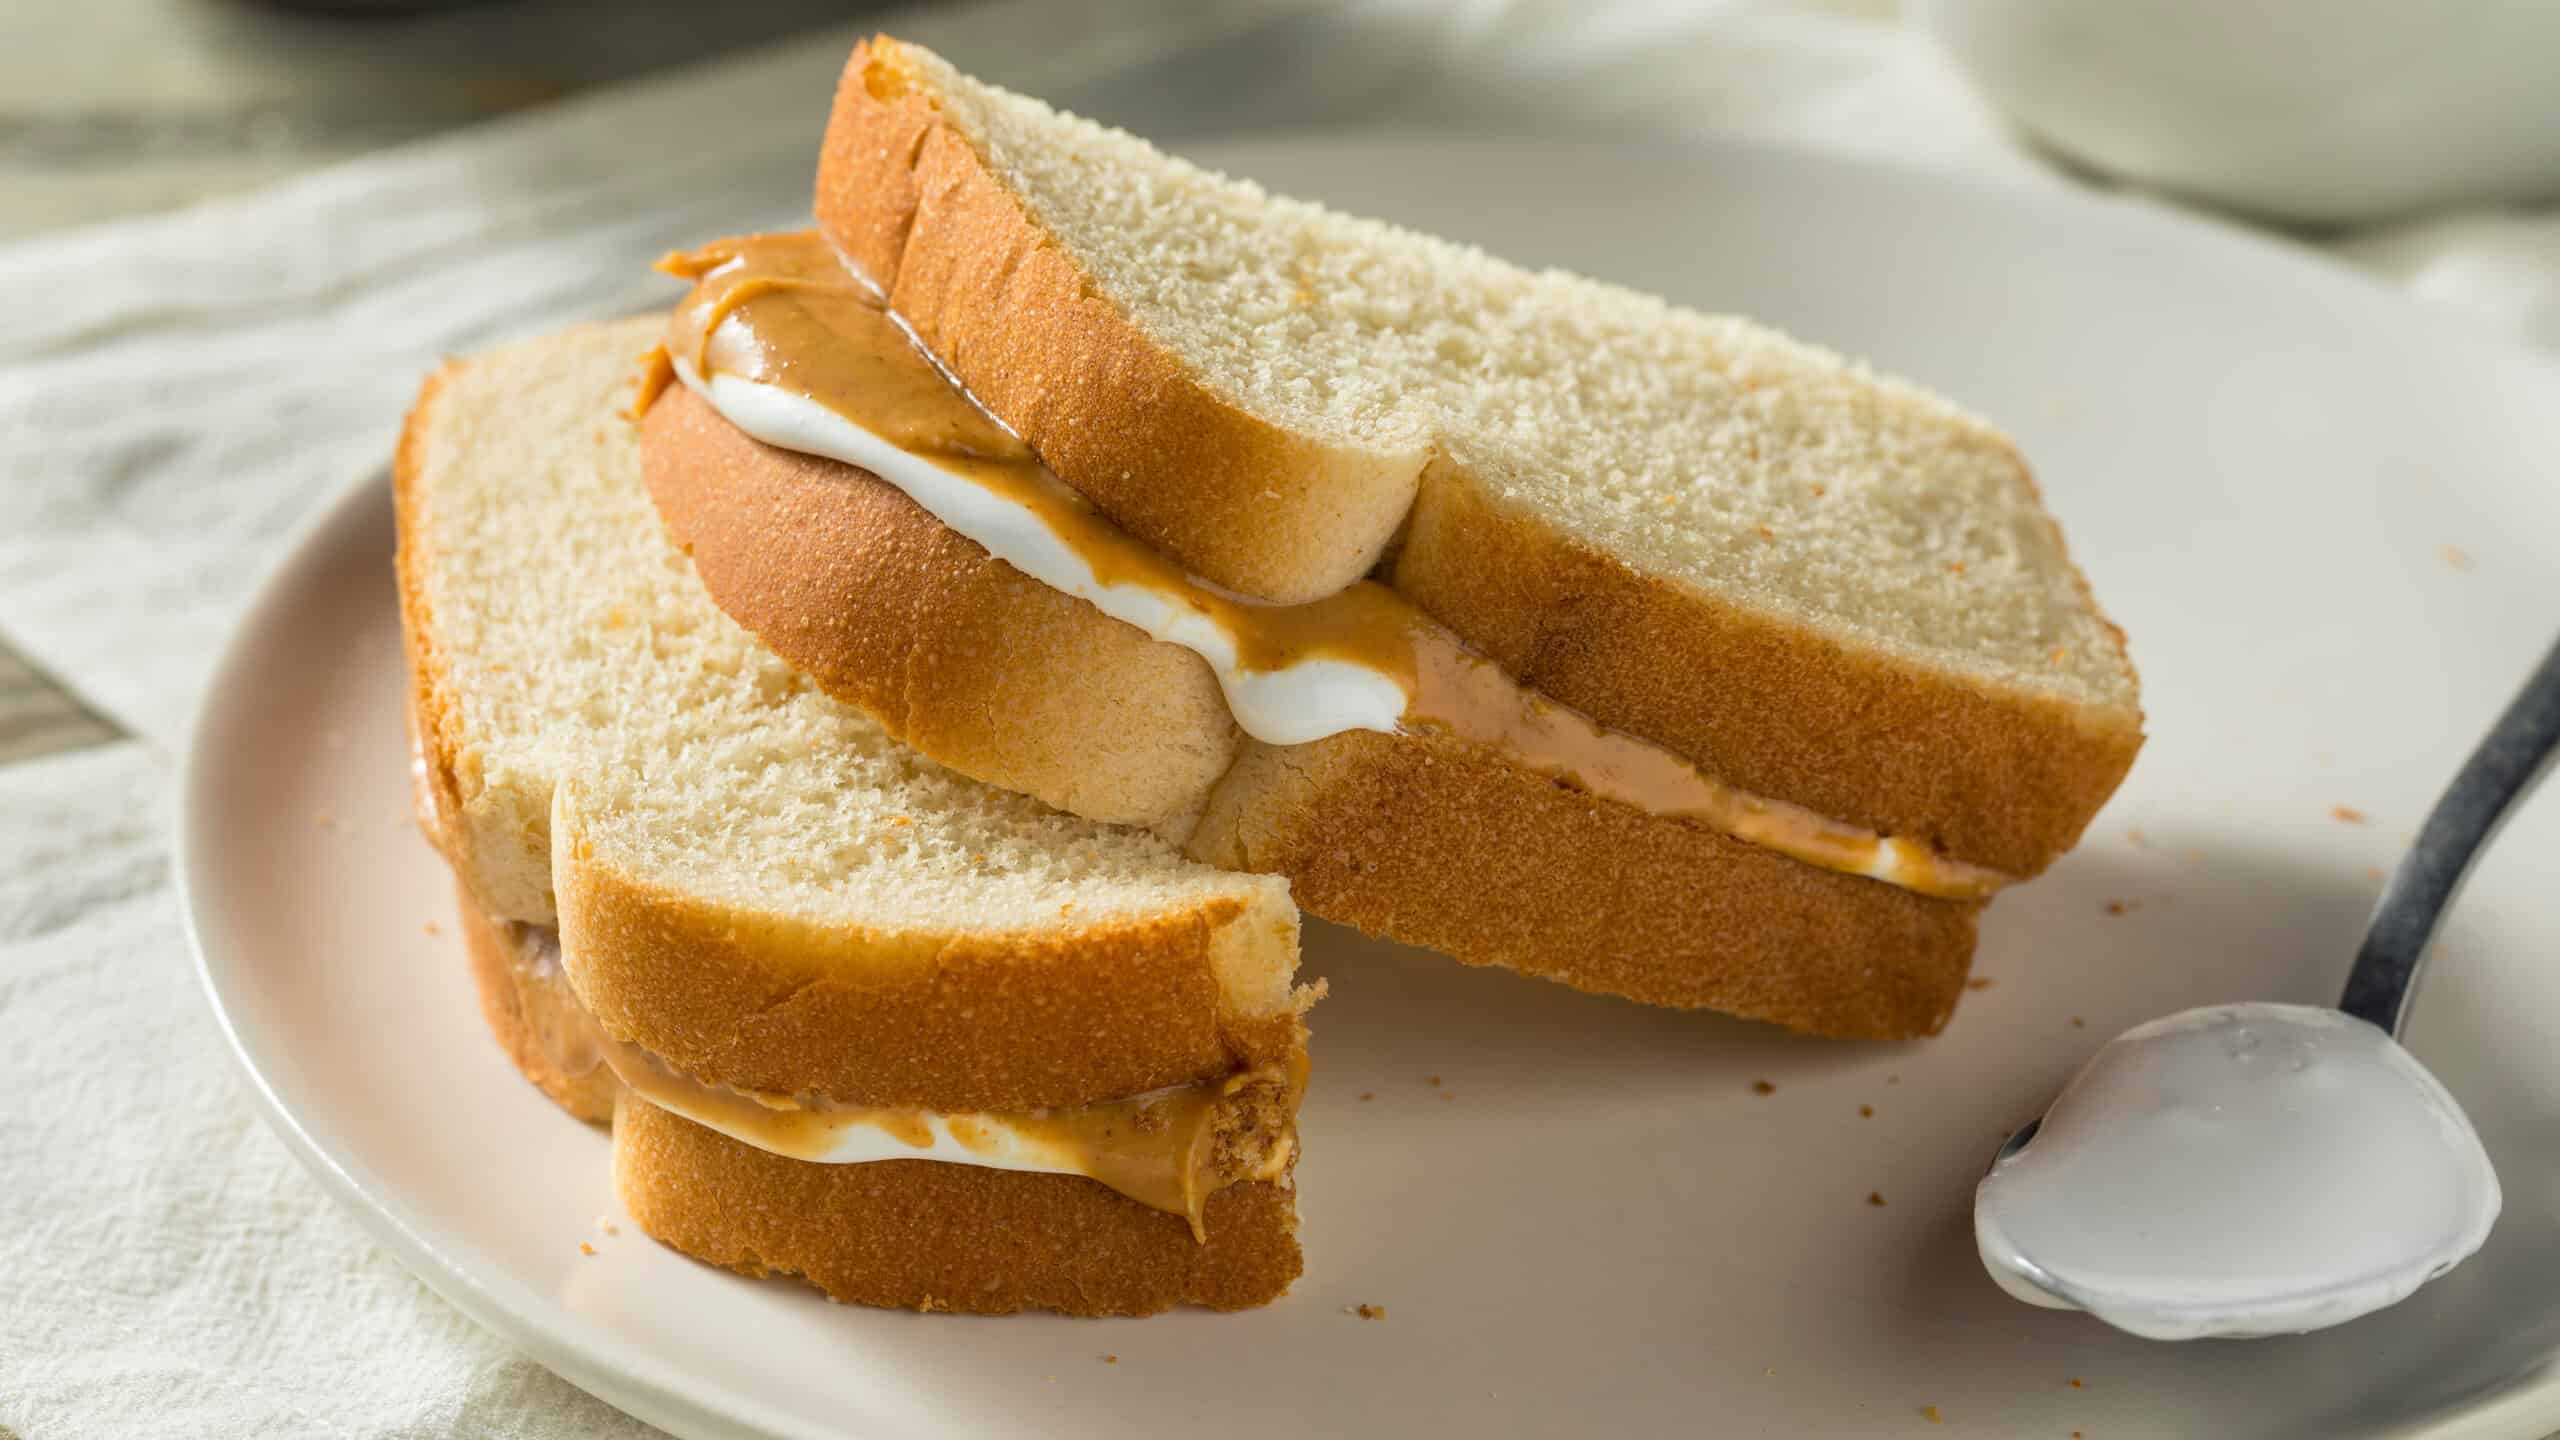 Homemade Fluffernutter Marshmallow Peanut Butter Sandwich for Kids